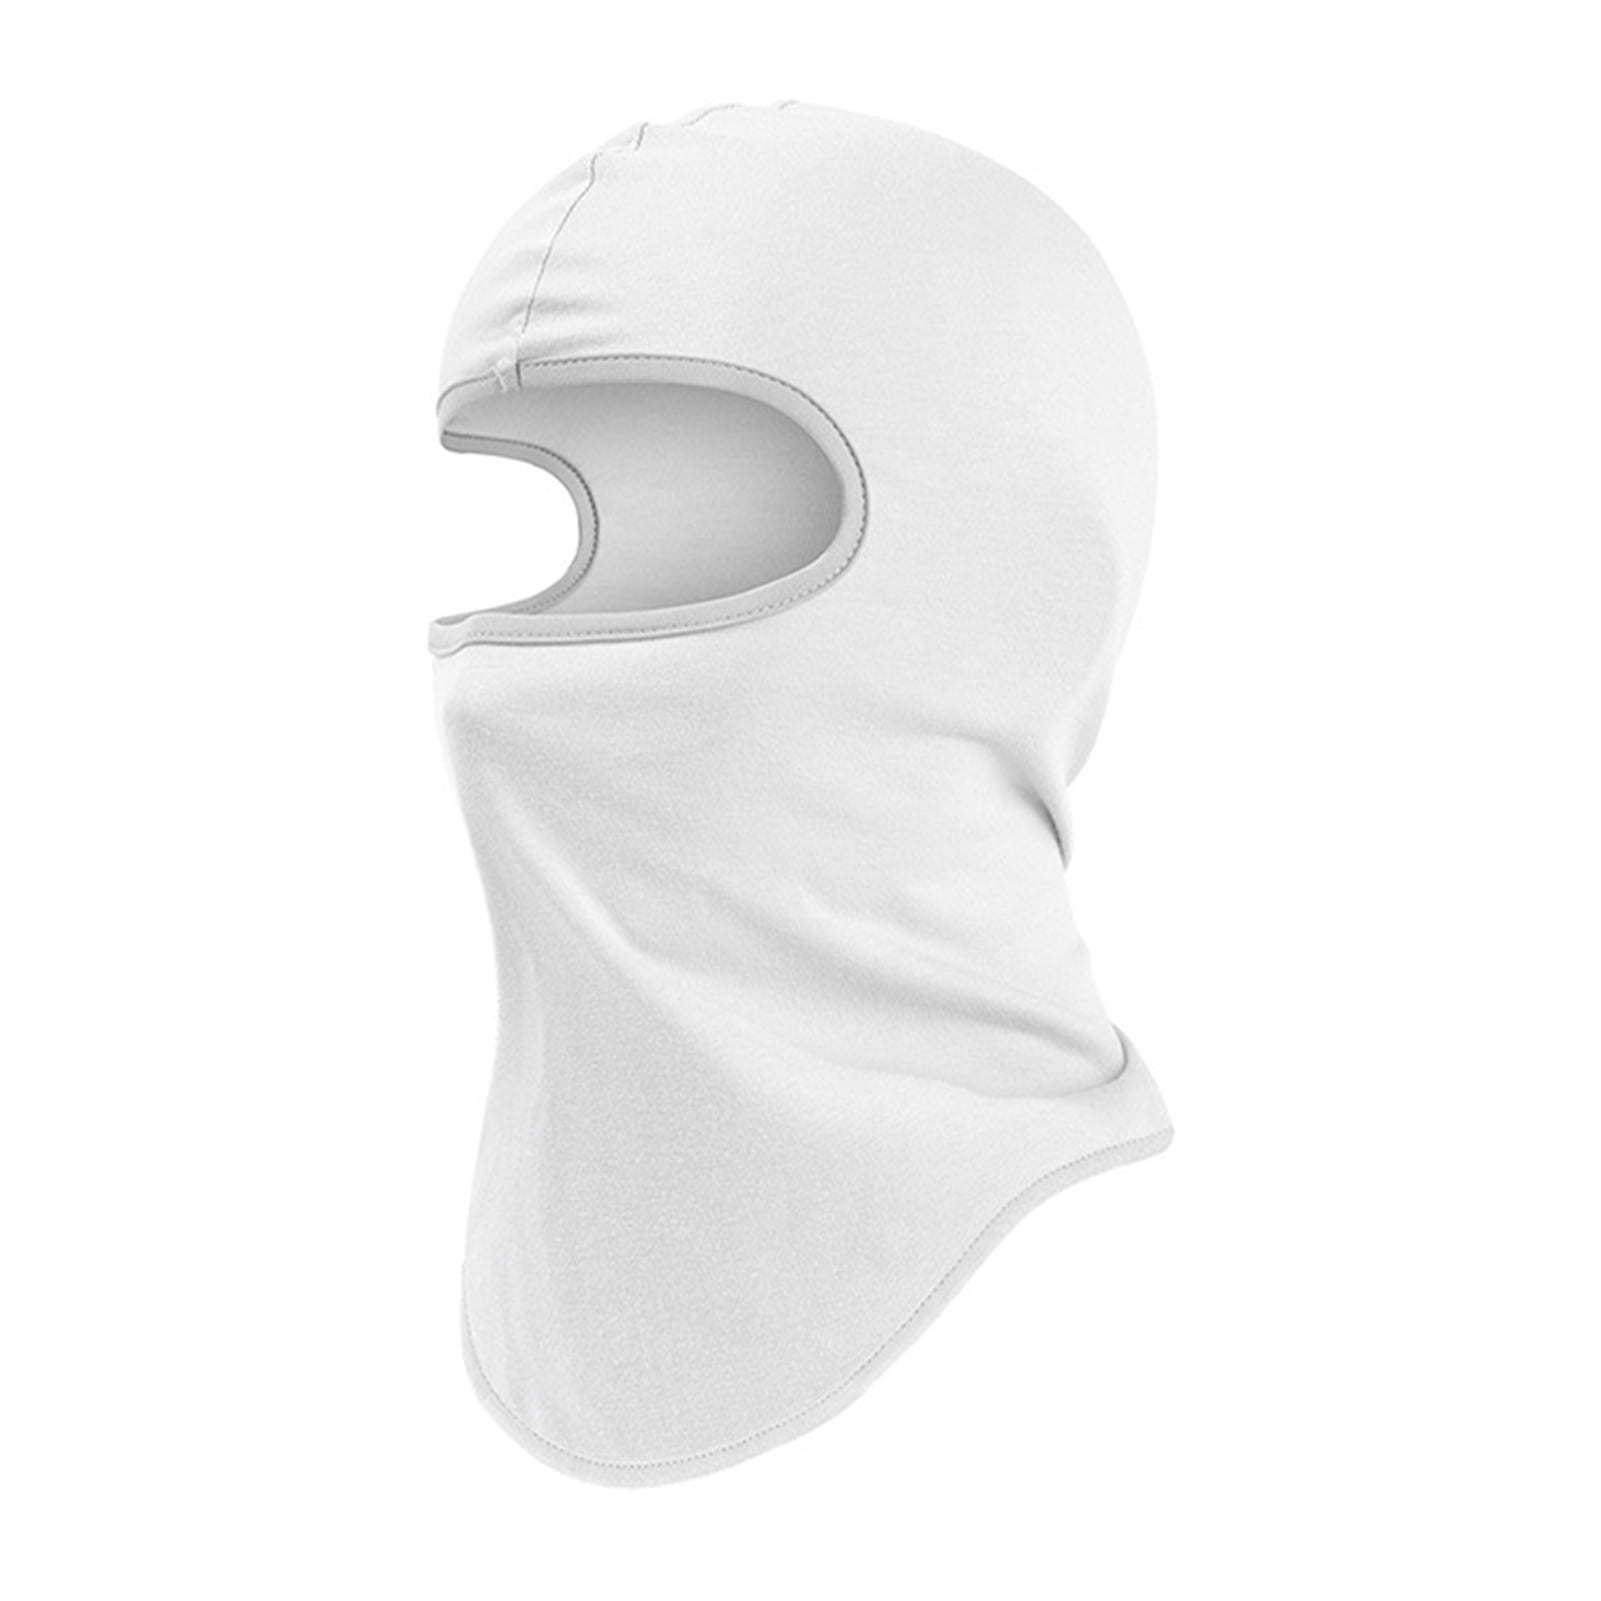 Balaclava Ski Mask Winter Face Mask for Men Women Windproof Warmer